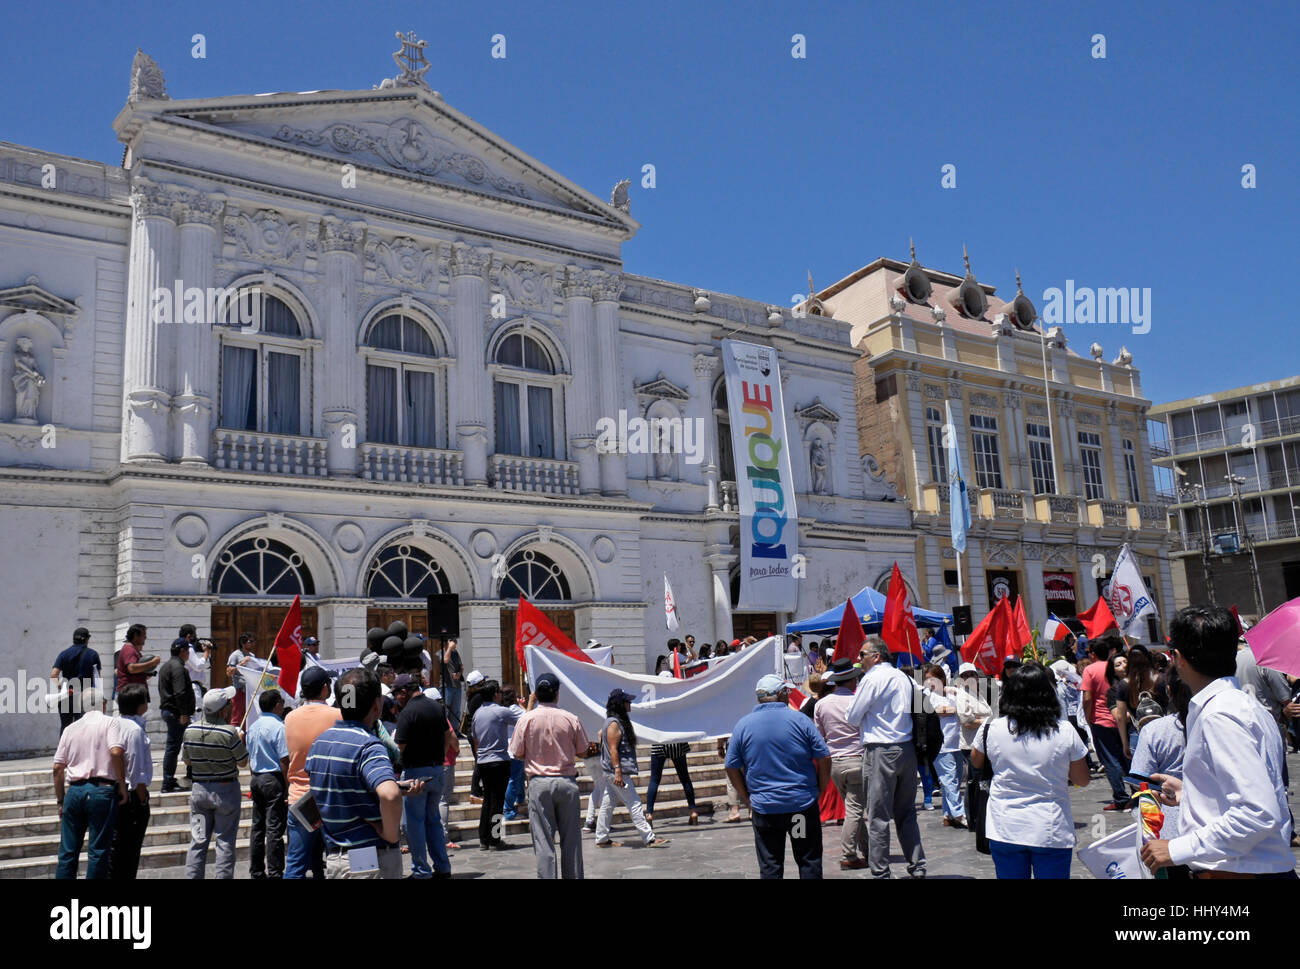 Demonstration in front of Teatro Municipal and Sociedad Protectora de Empleados de Tarapaca facing Plaza Prat, Iquique, Chile Stock Photo